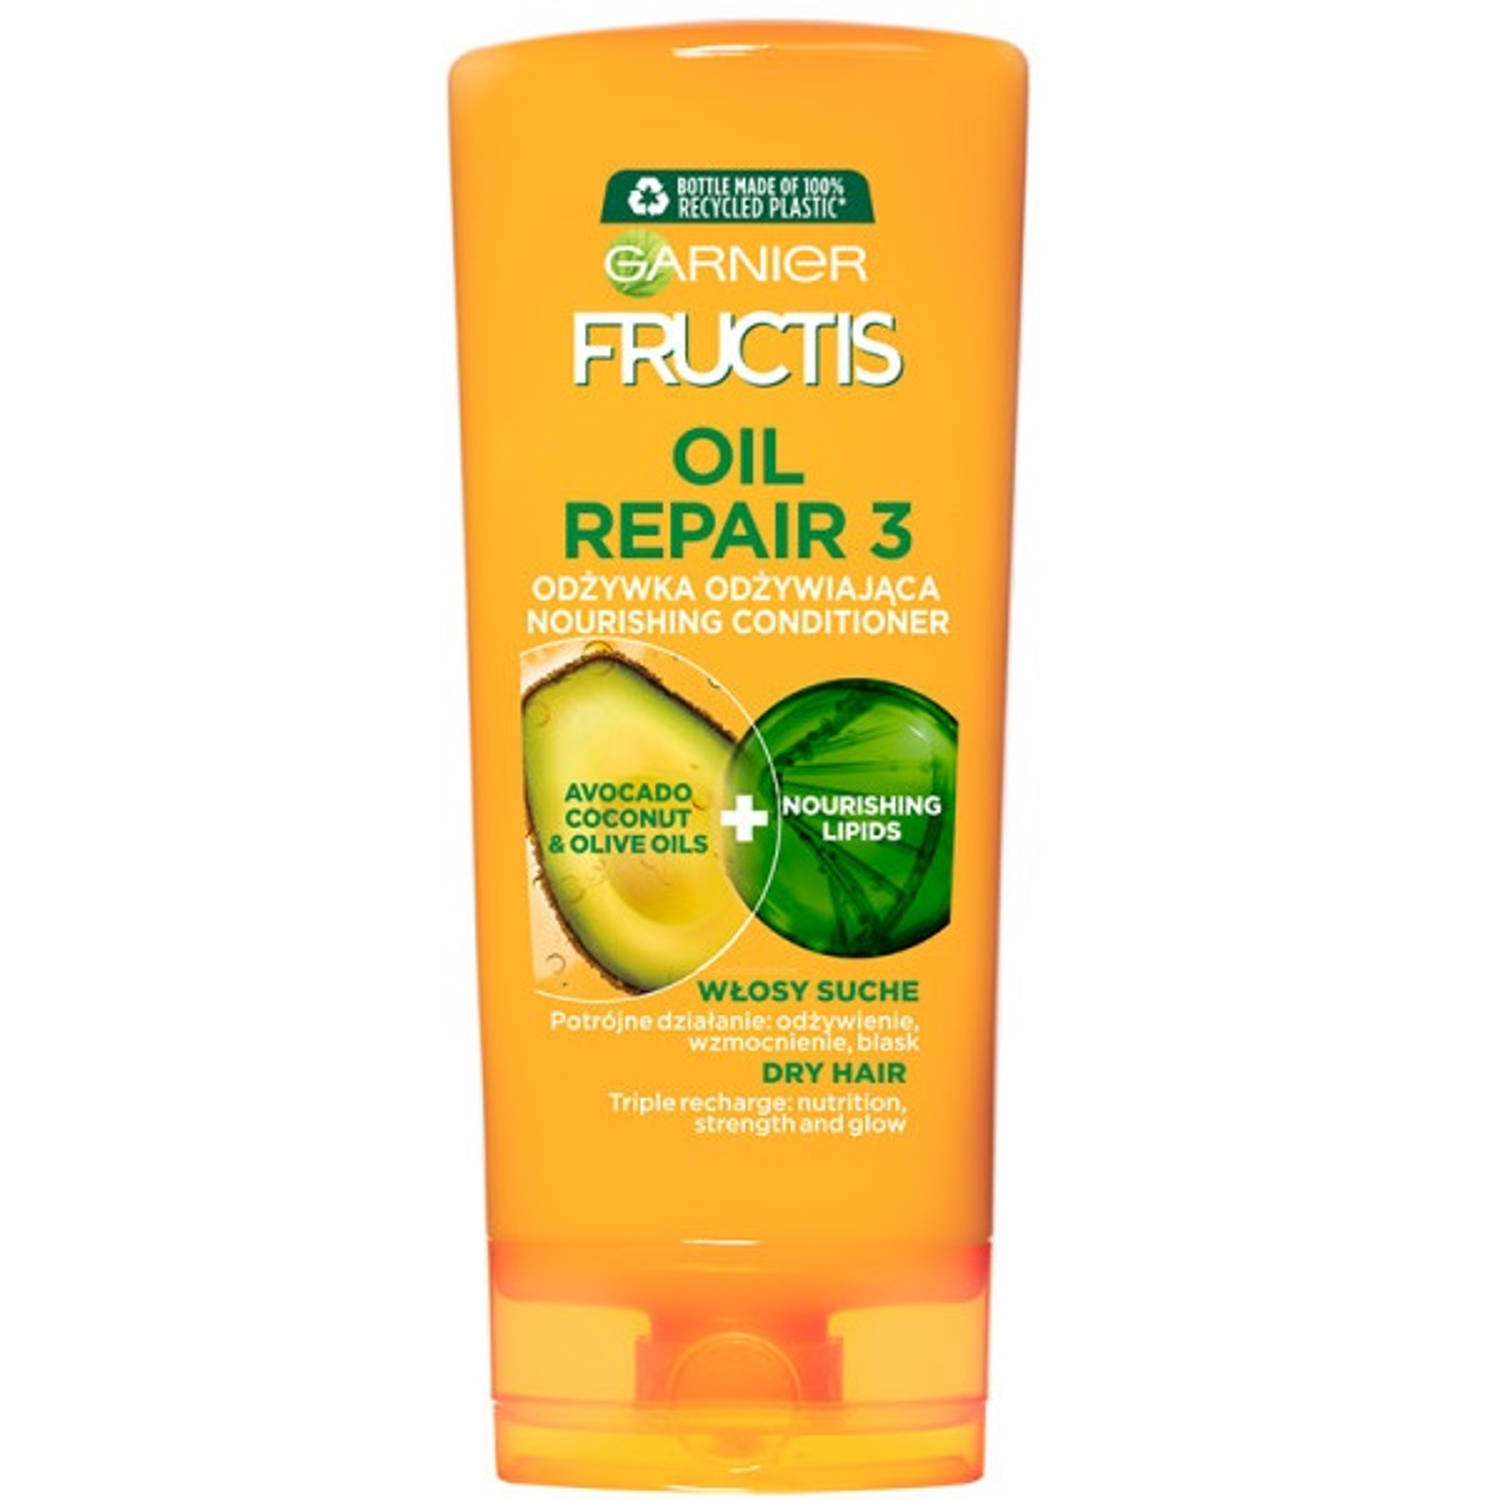 Fructis Oil Repair 3 versterkende conditioner voor droog en breekbaar haar 200ml